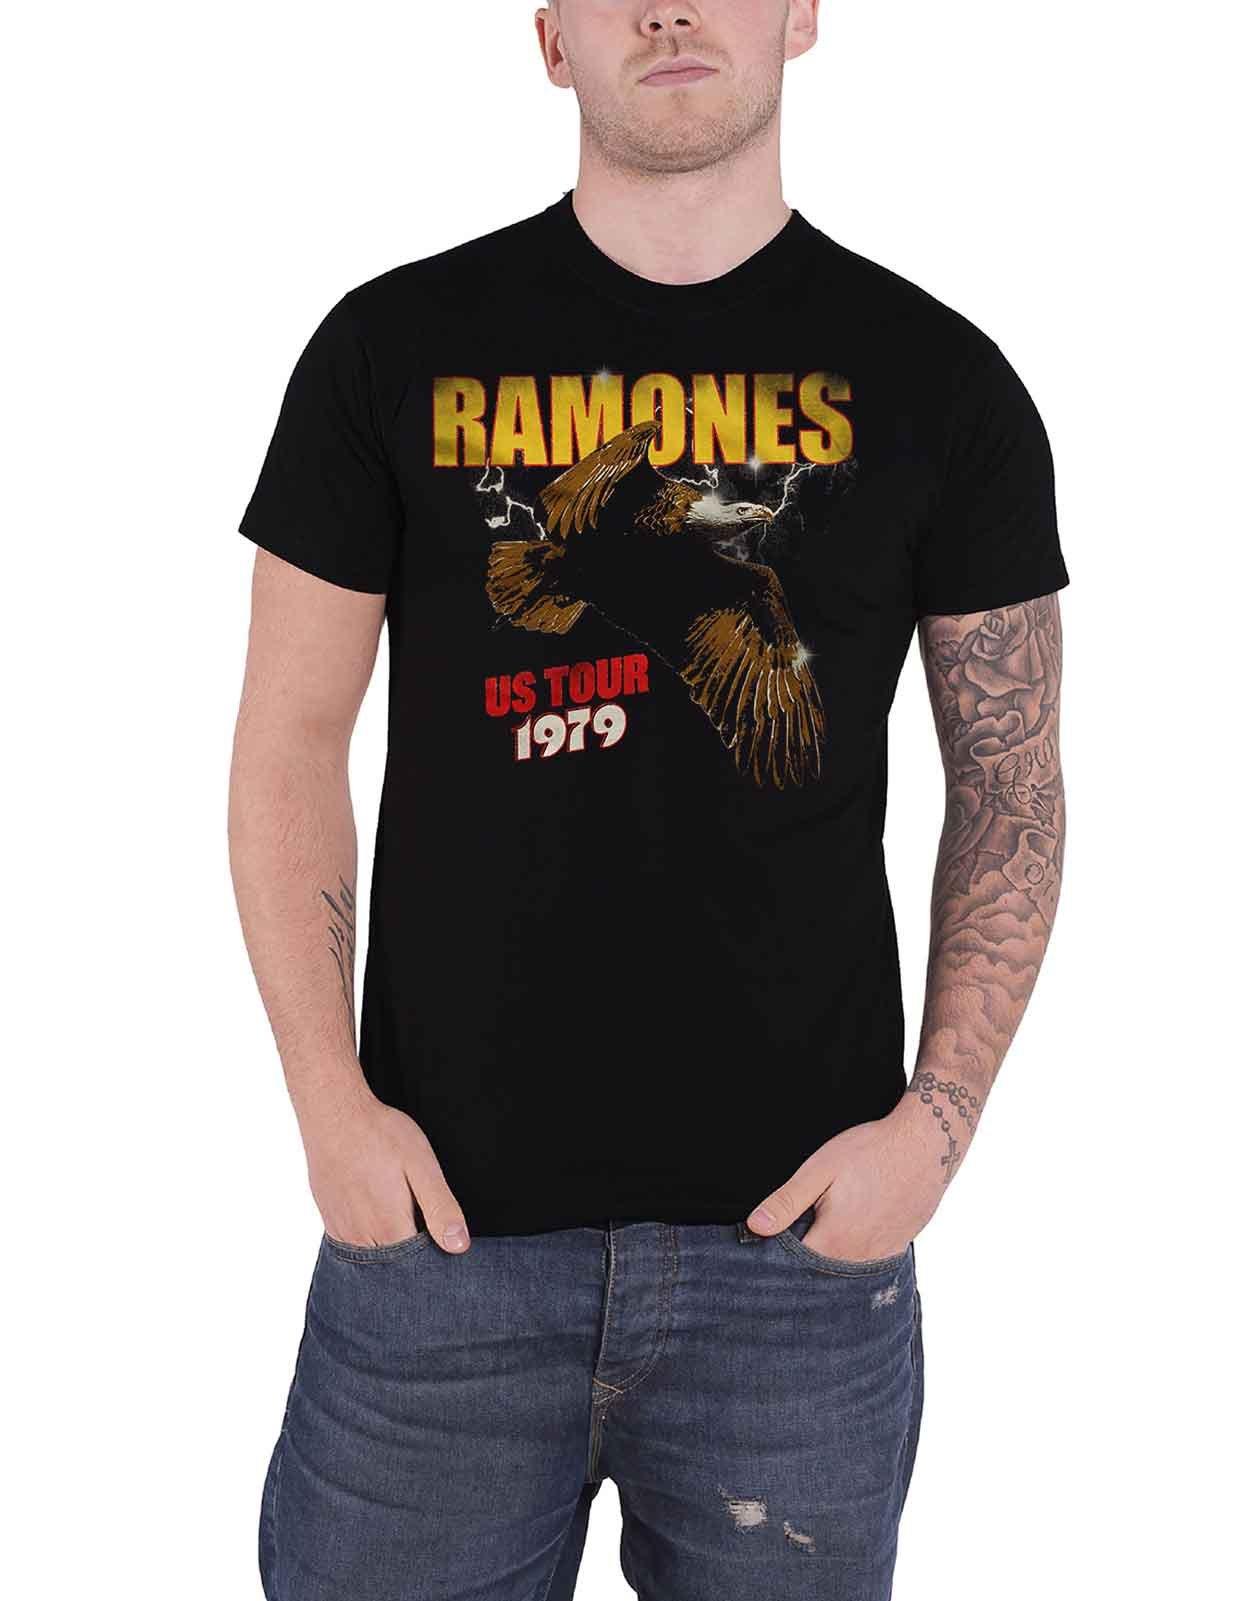 Футболка с орлом тура по США 1979 года Ramones, черный футболка overwatch winston logo черная